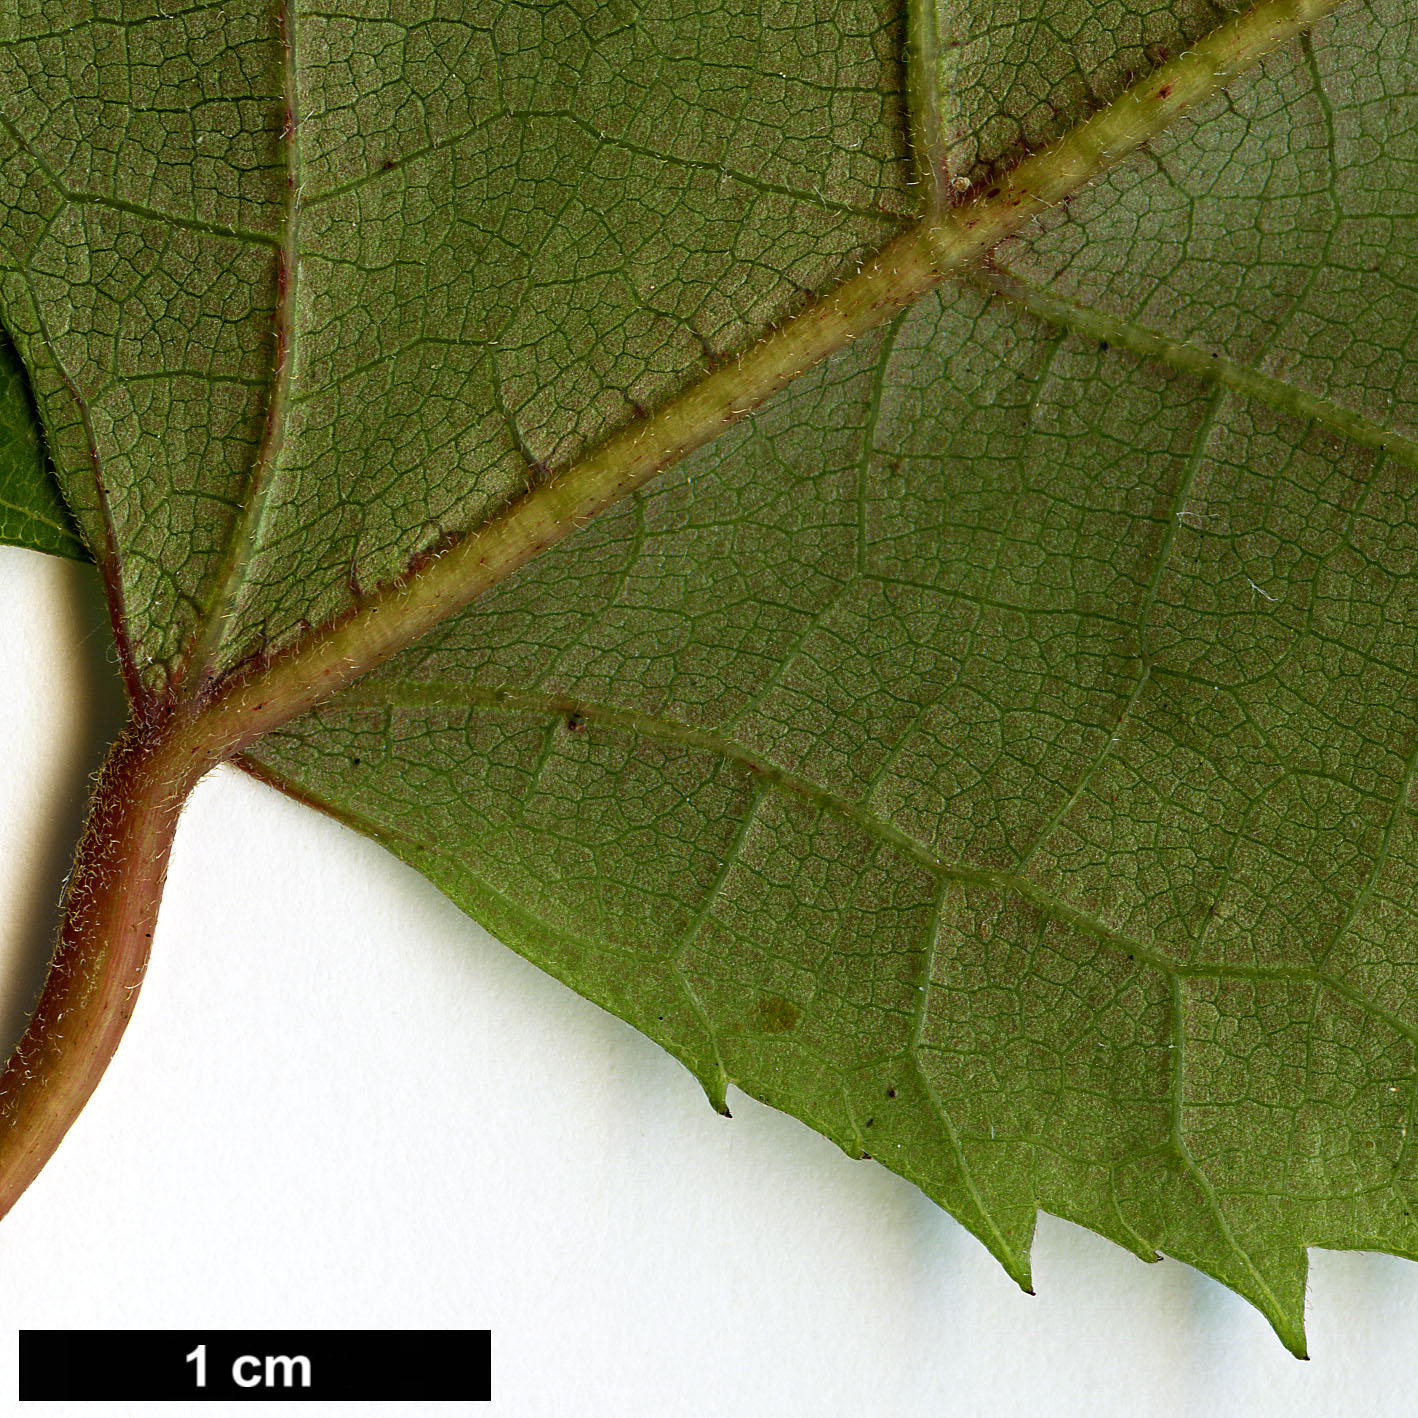 High resolution image: Family: Elaeocarpaceae - Genus: Aristotelia - Taxon: serrata